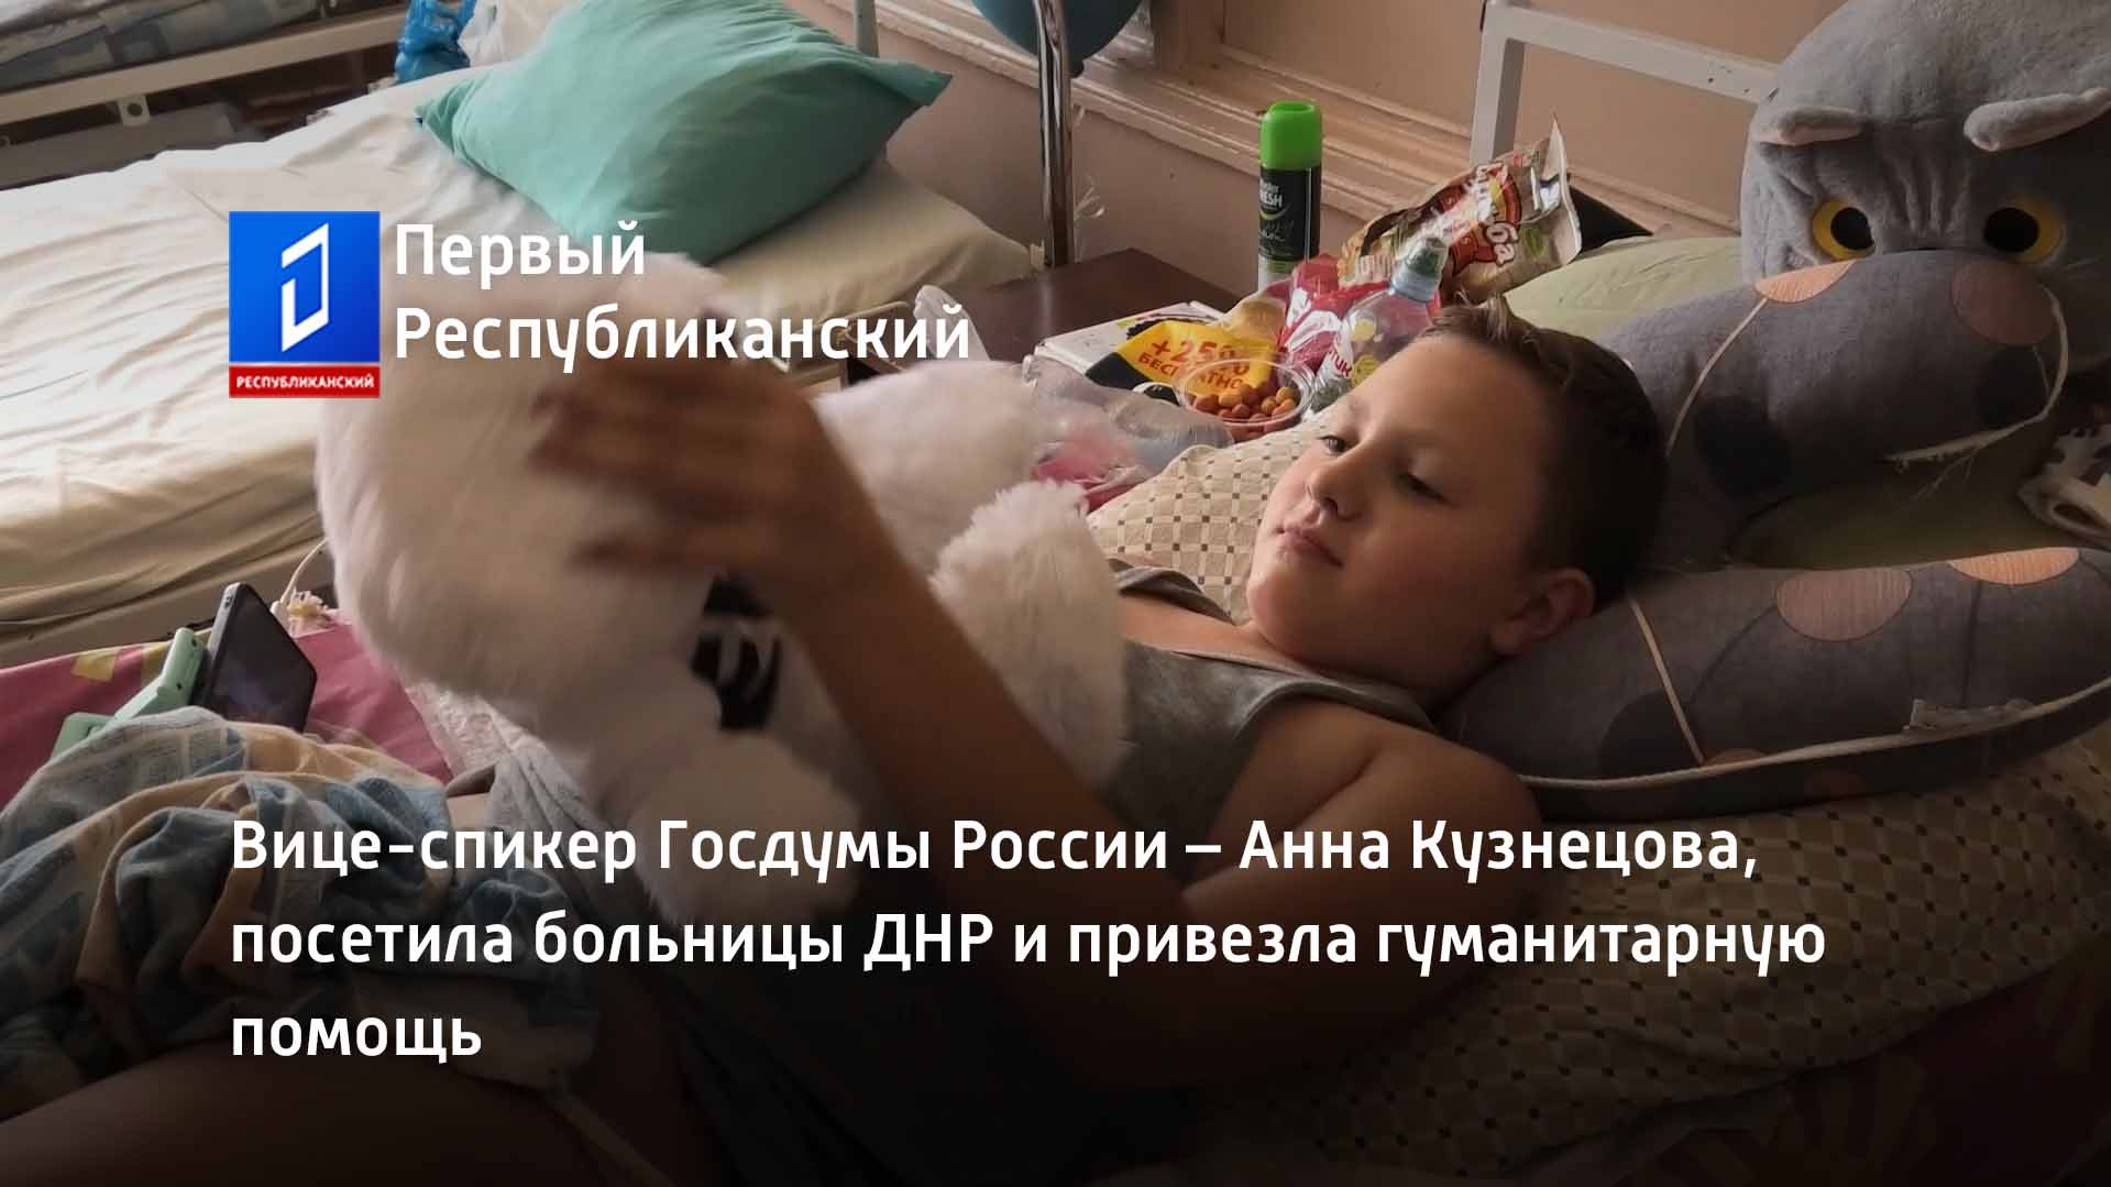 Вице-спикер Госдумы России – Анна Кузнецова, посетила больницы ДНР и привезла гуманитарную помощь